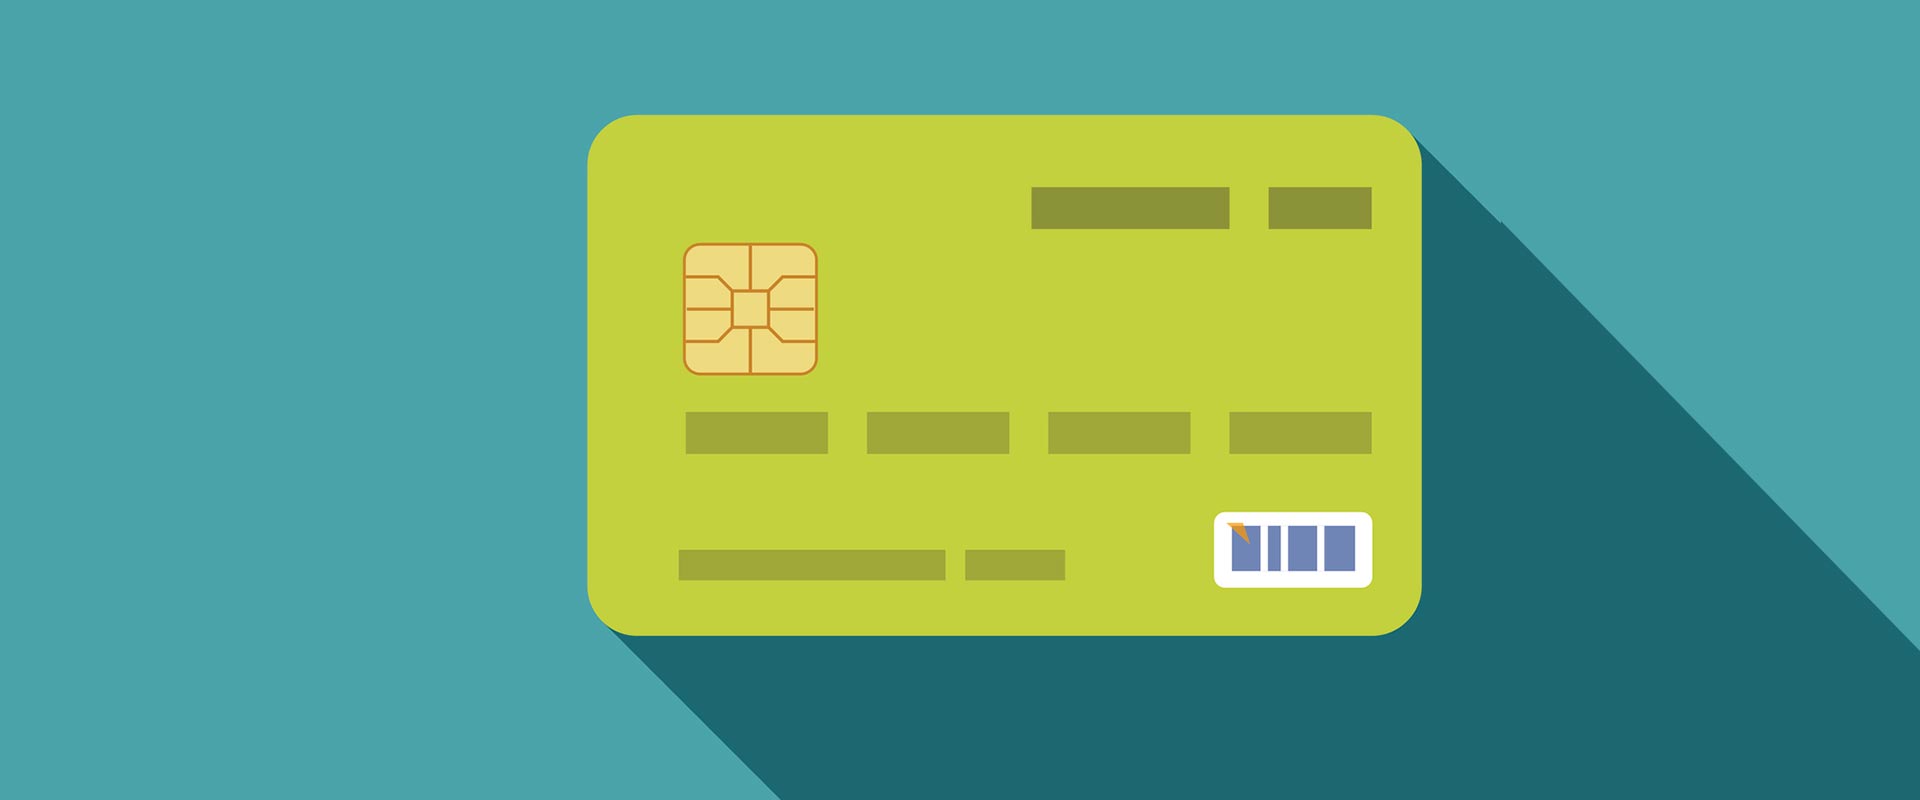 cartão de crédito para negativados